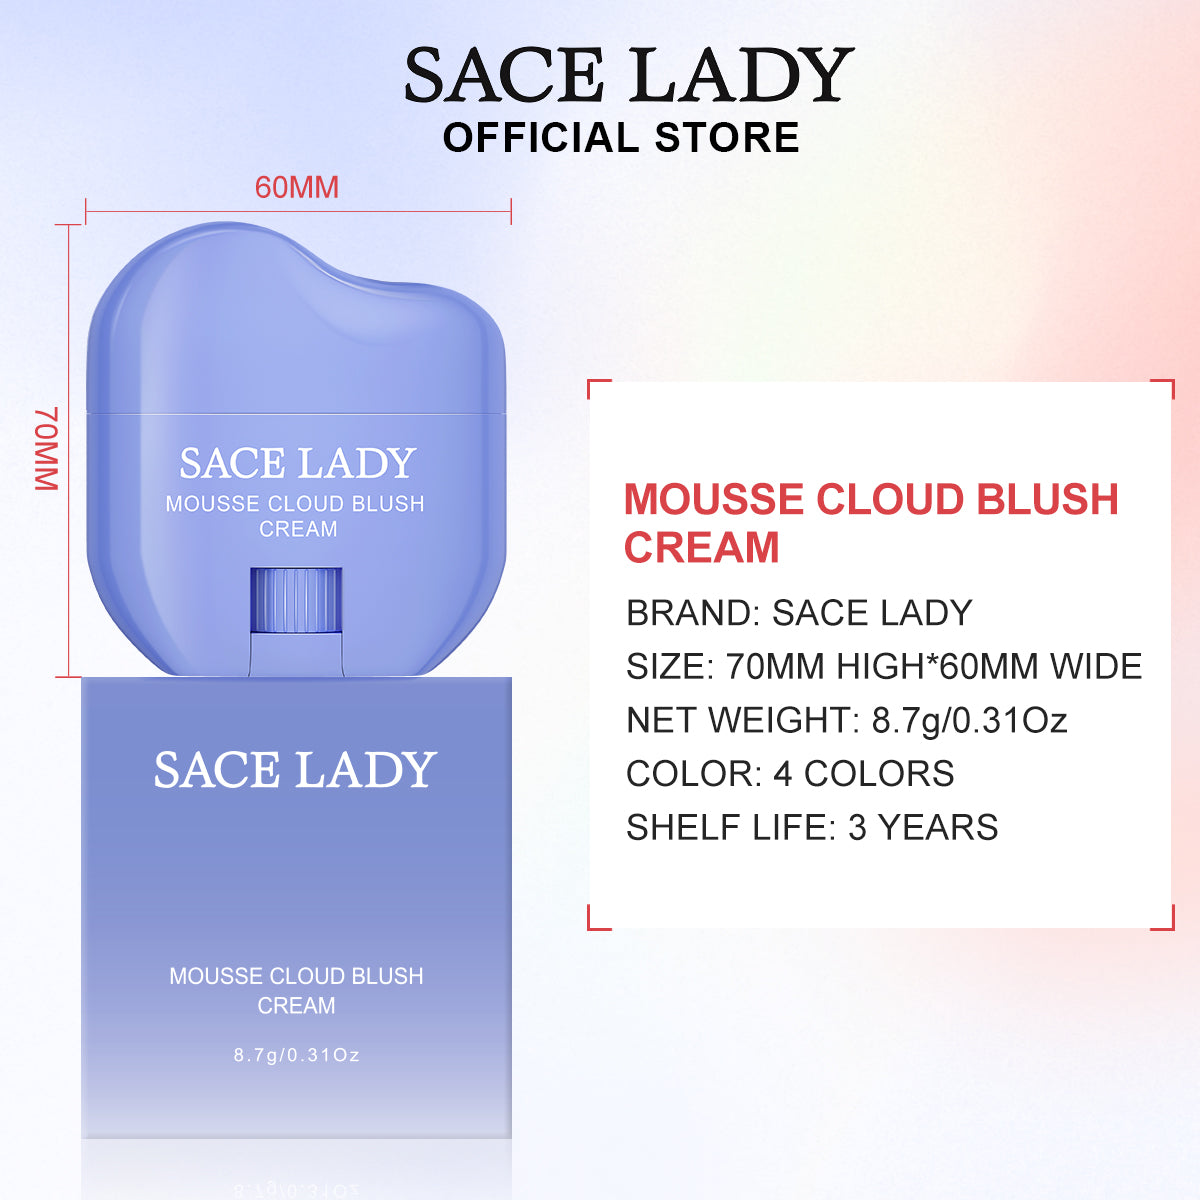 SACE LADY Mousse Cloud Blush Cream